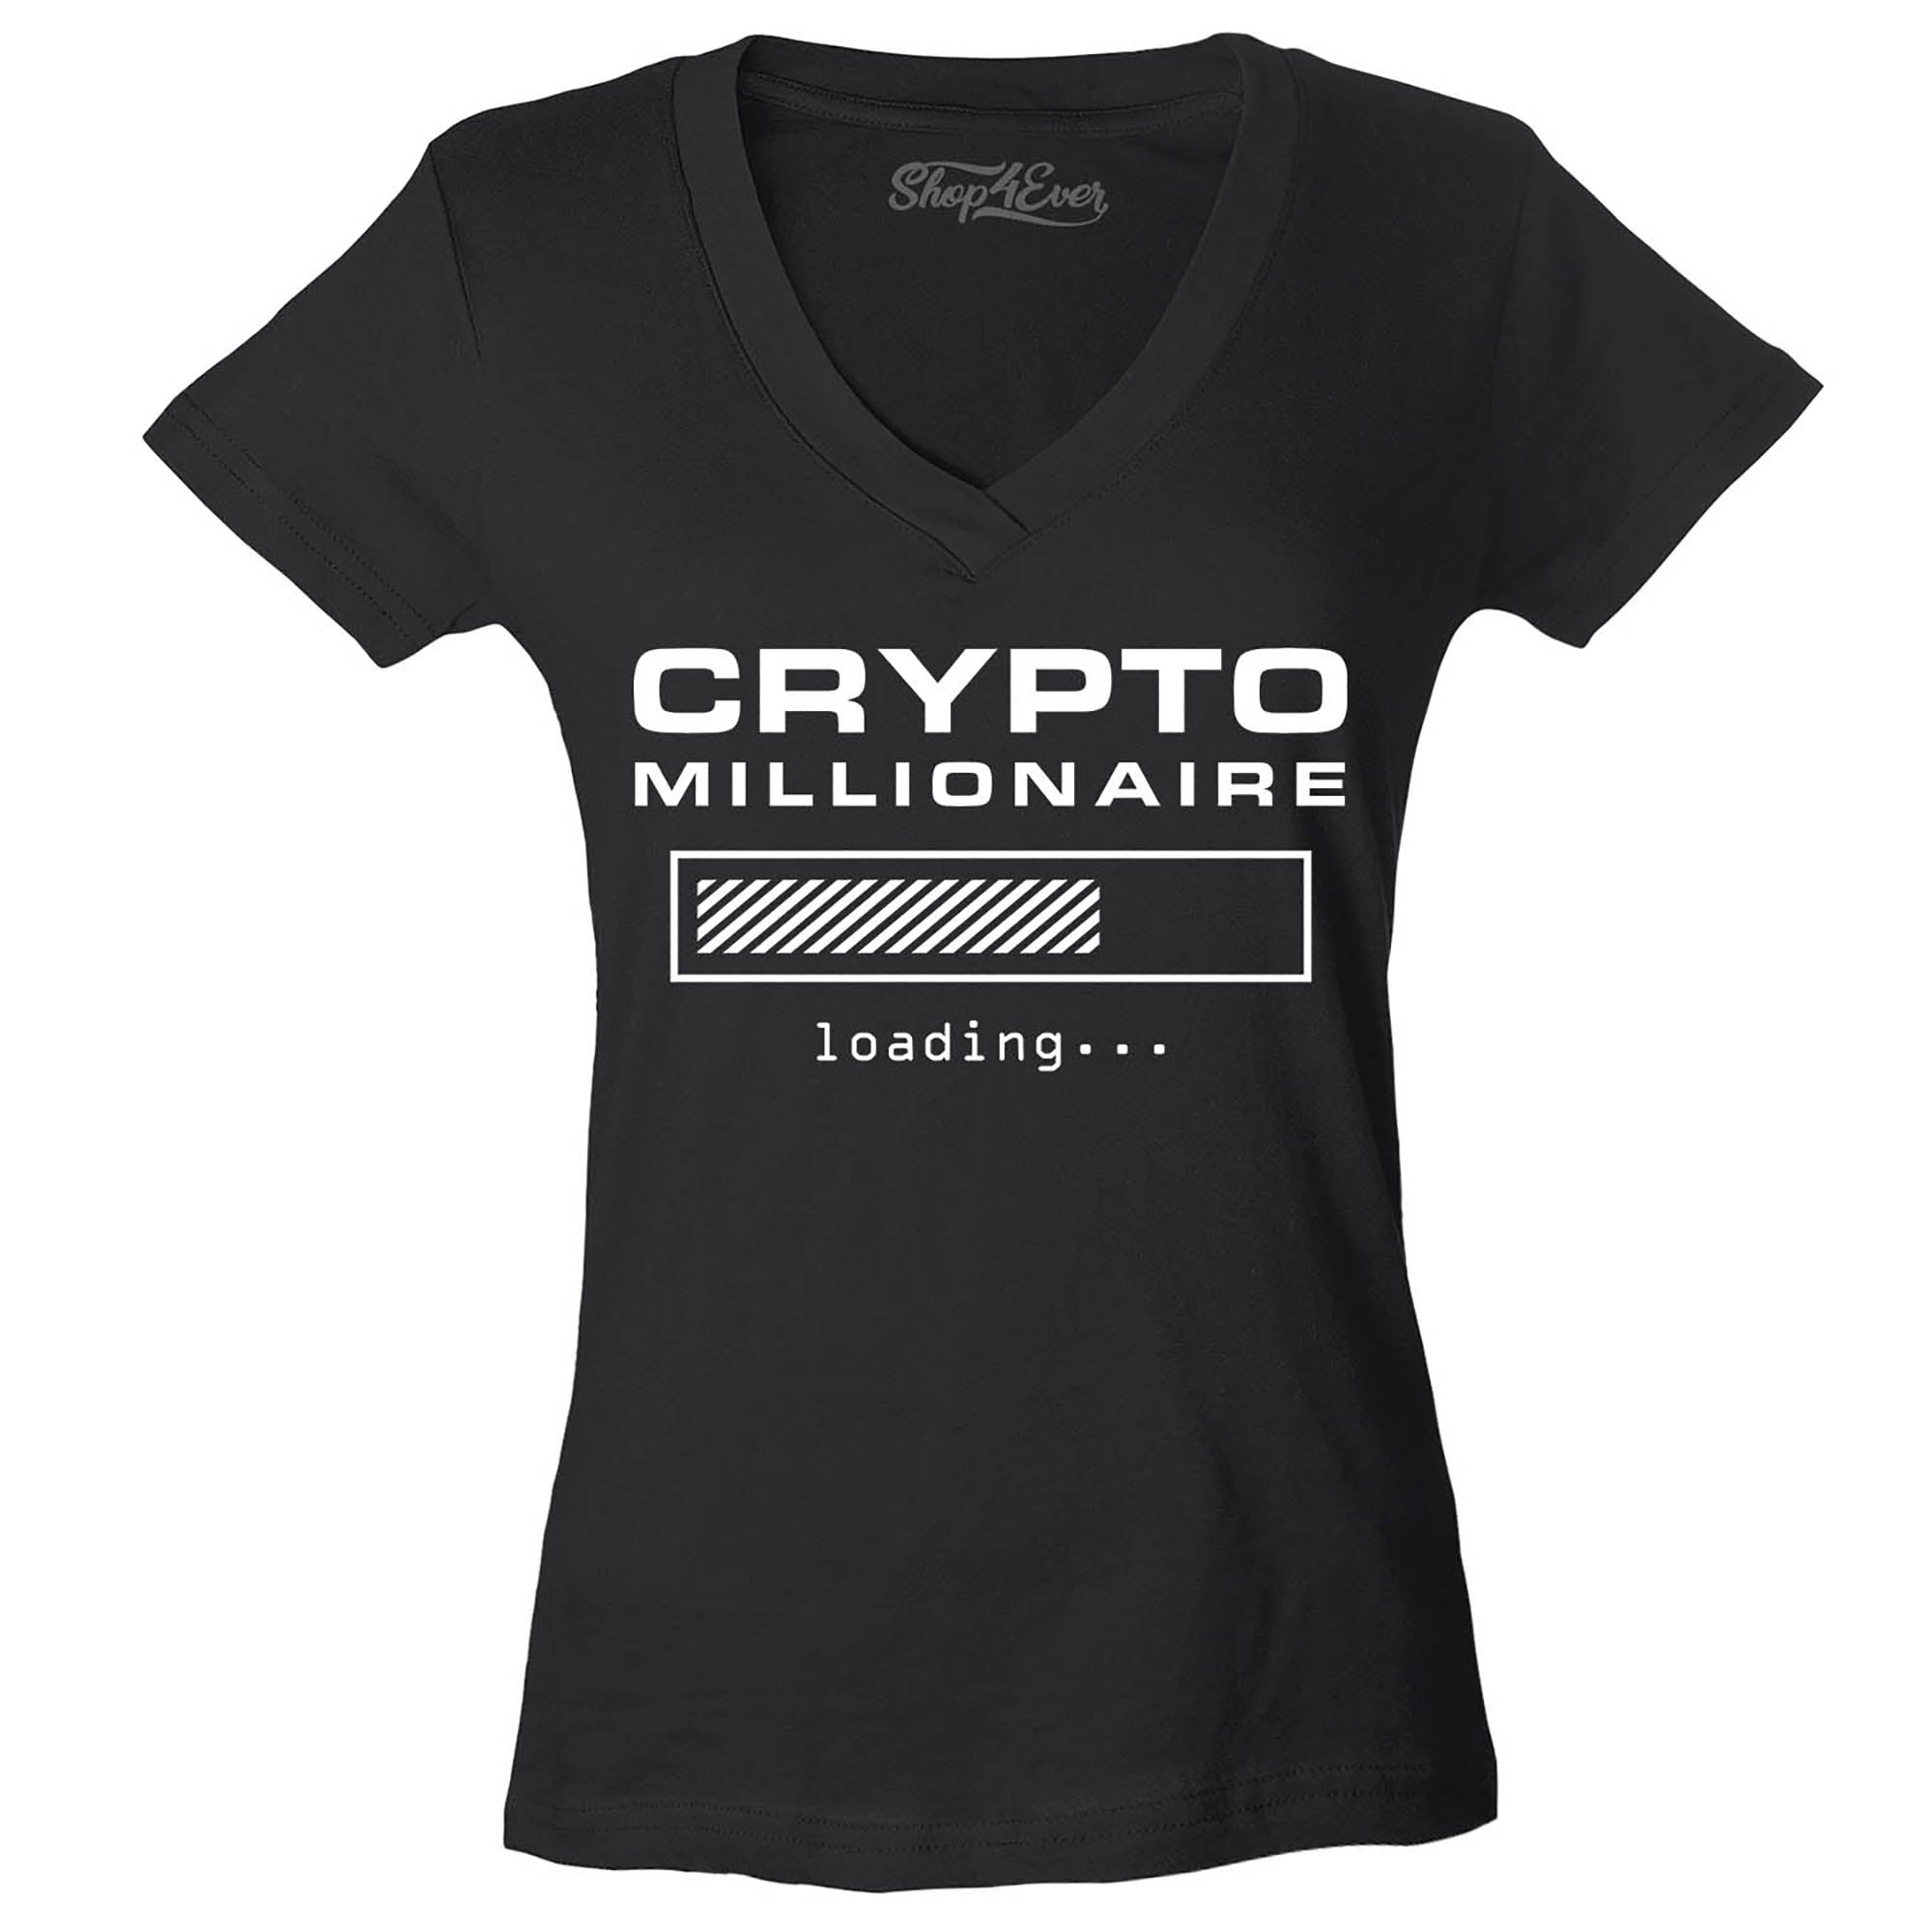 Crypto Millionaire Loading… Women's V-Neck T-Shirt Slim Fit